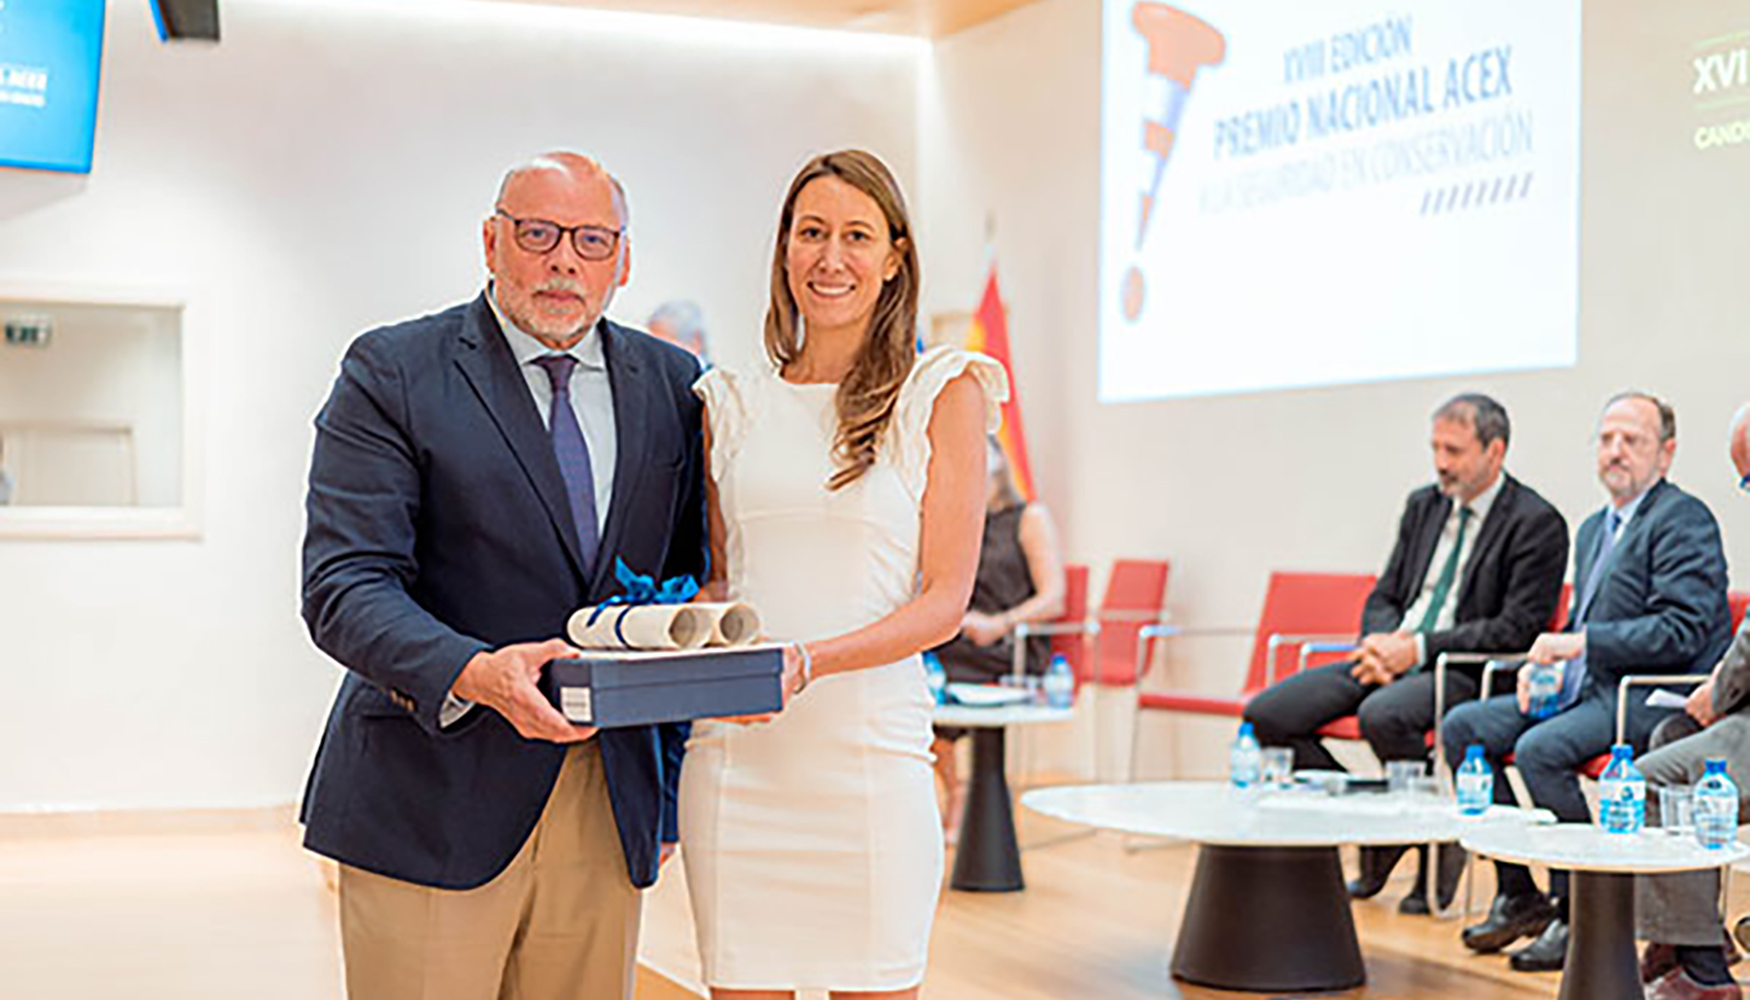 El Premio ACEX en la categora general fue entregado por Javier Herrero, director de Carreteras del MITMA, y recogido por Arancha Lauffer...